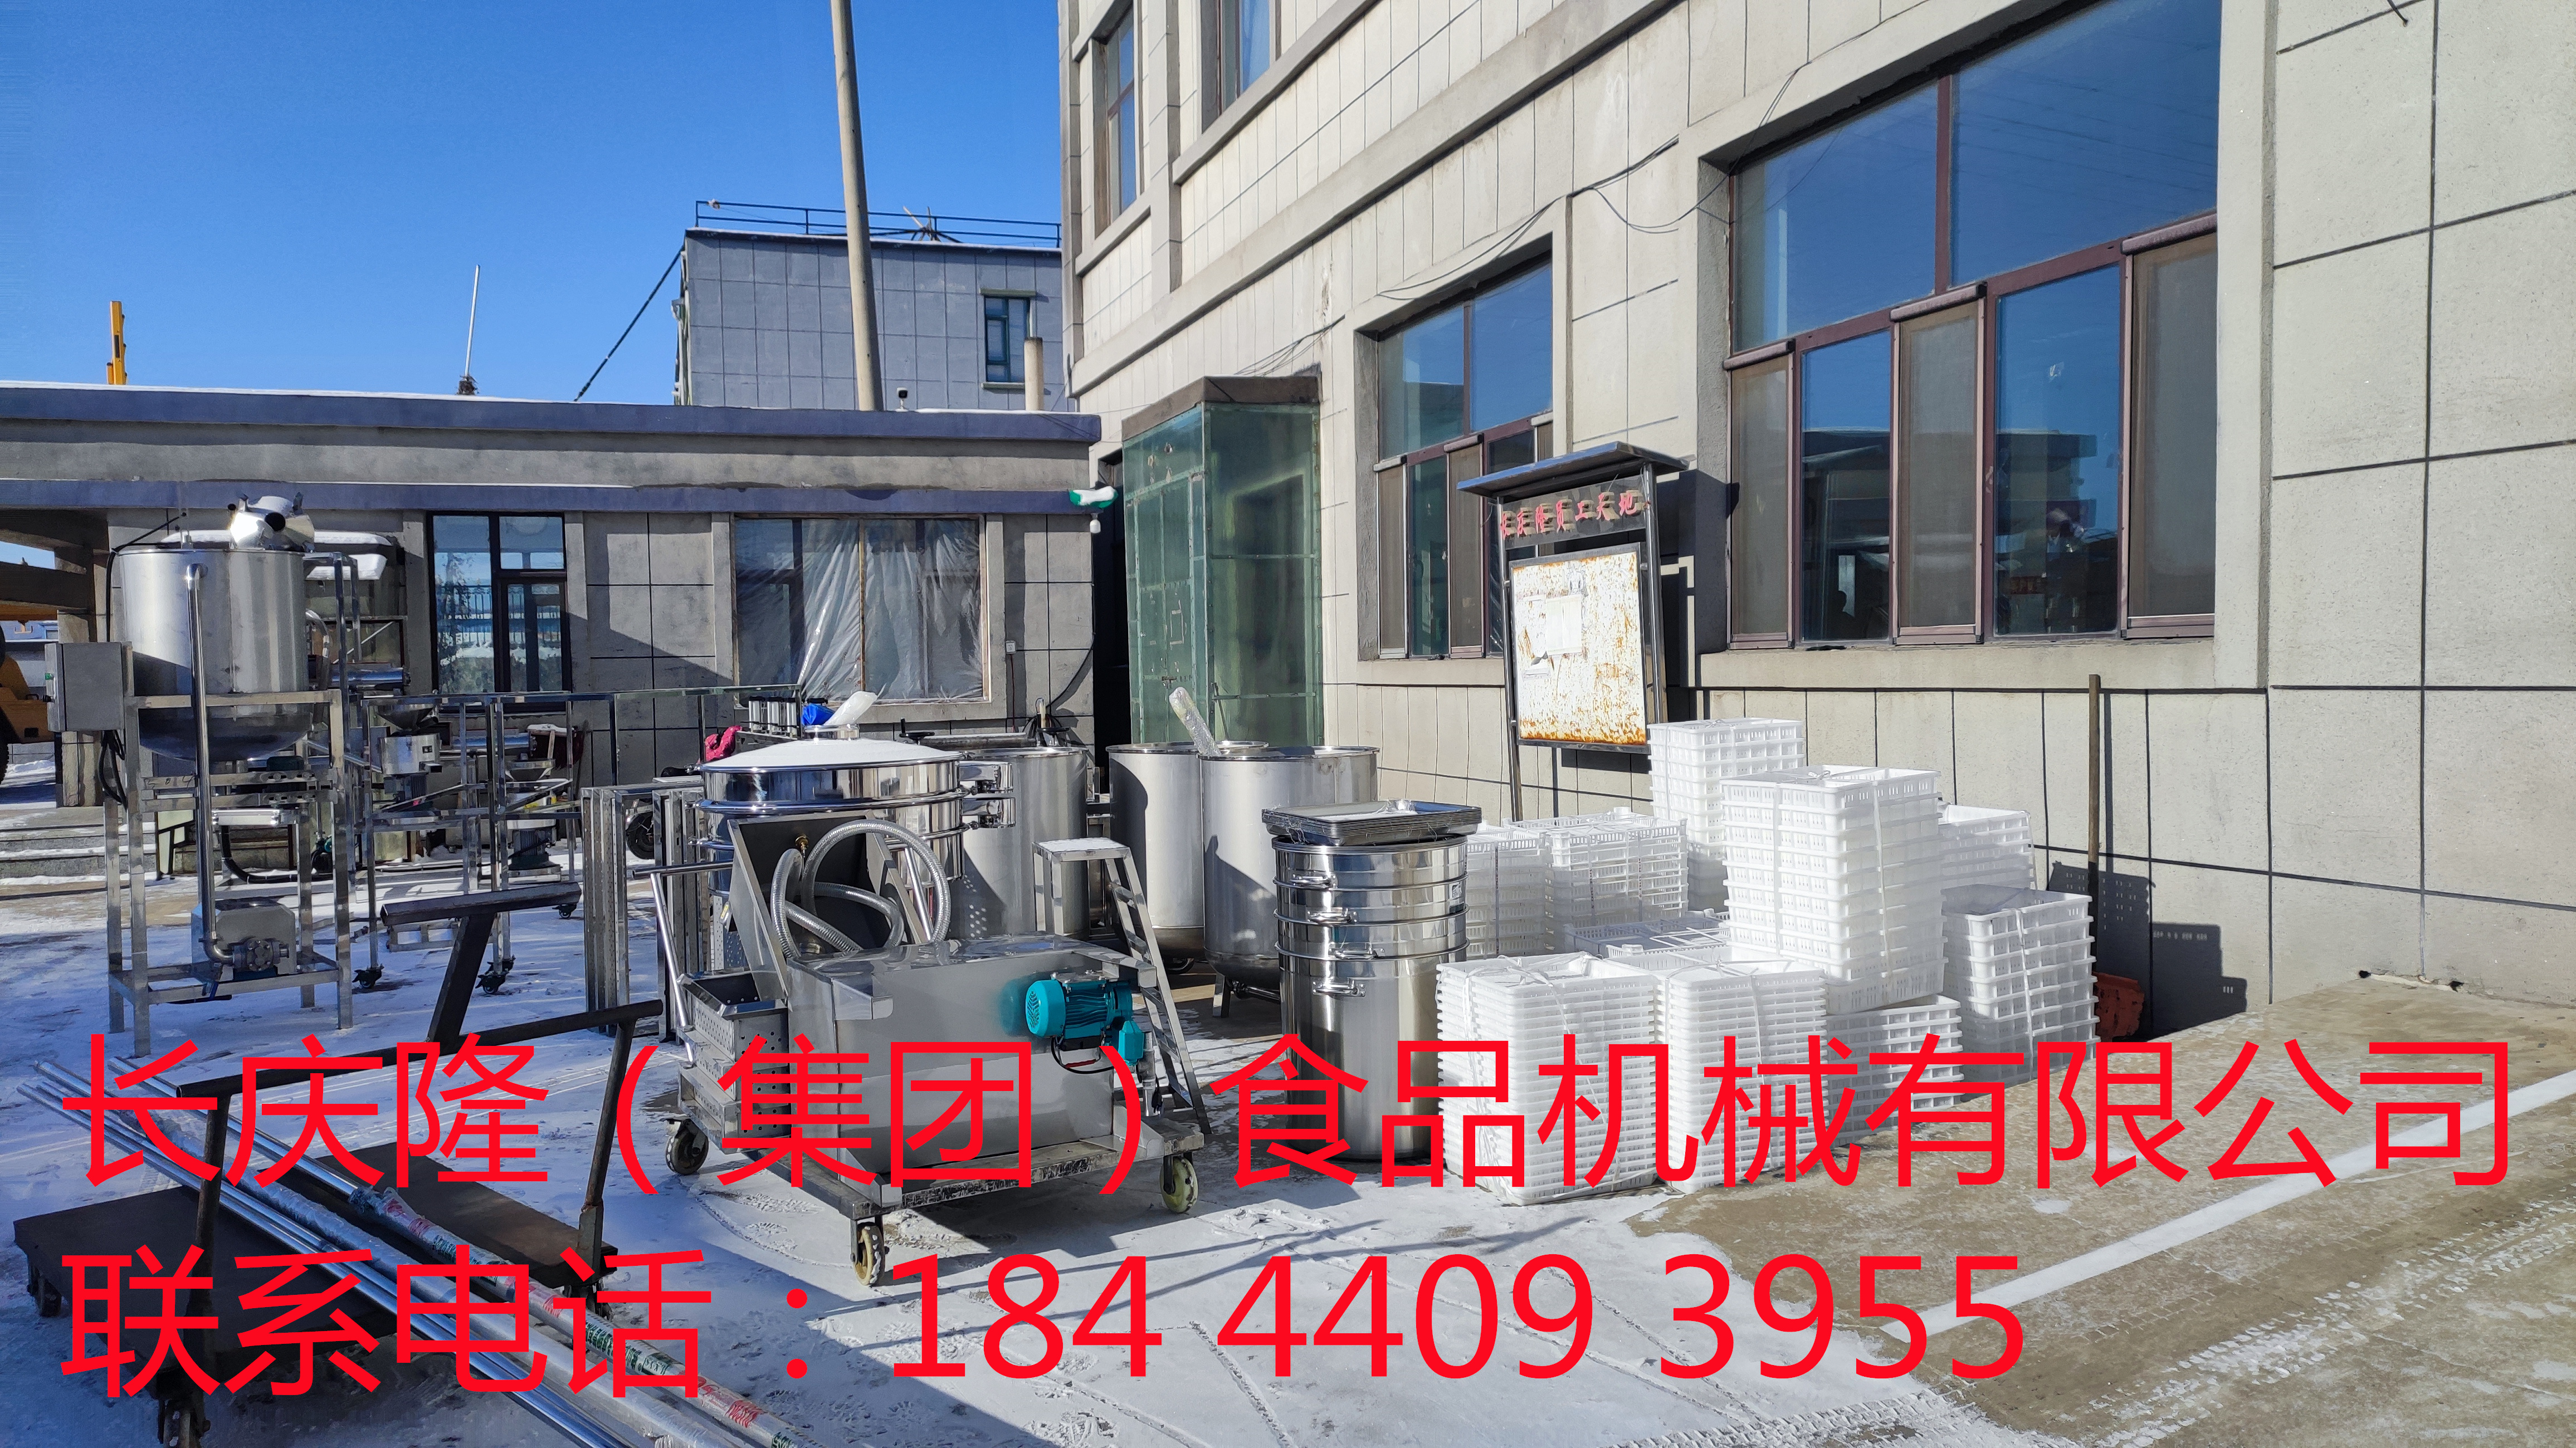 发往锦州的大型豆腐机设备装车发货 (5)_副本.jpg